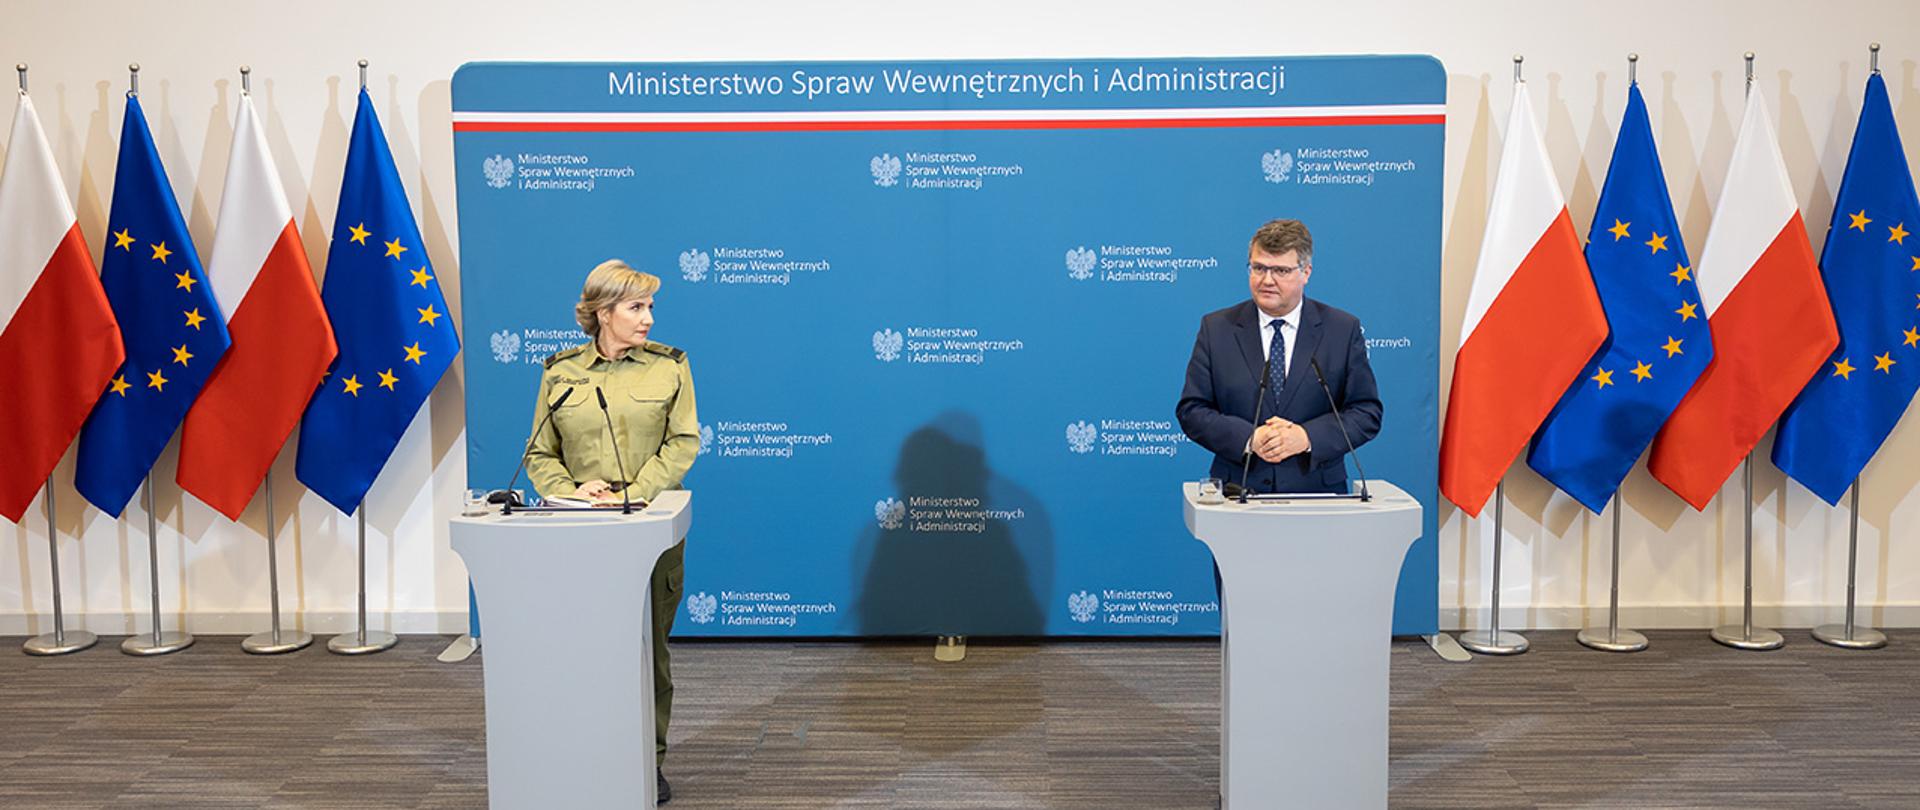 Na zdjęciu widać wiceministra Macieja Wąsika i gen. bryg. SG Wioletę Gorzkowską stojących za mównicami w trakcie konferencji prasowej. W tle widać ściankę MSWiA, flagi Polski i UE .